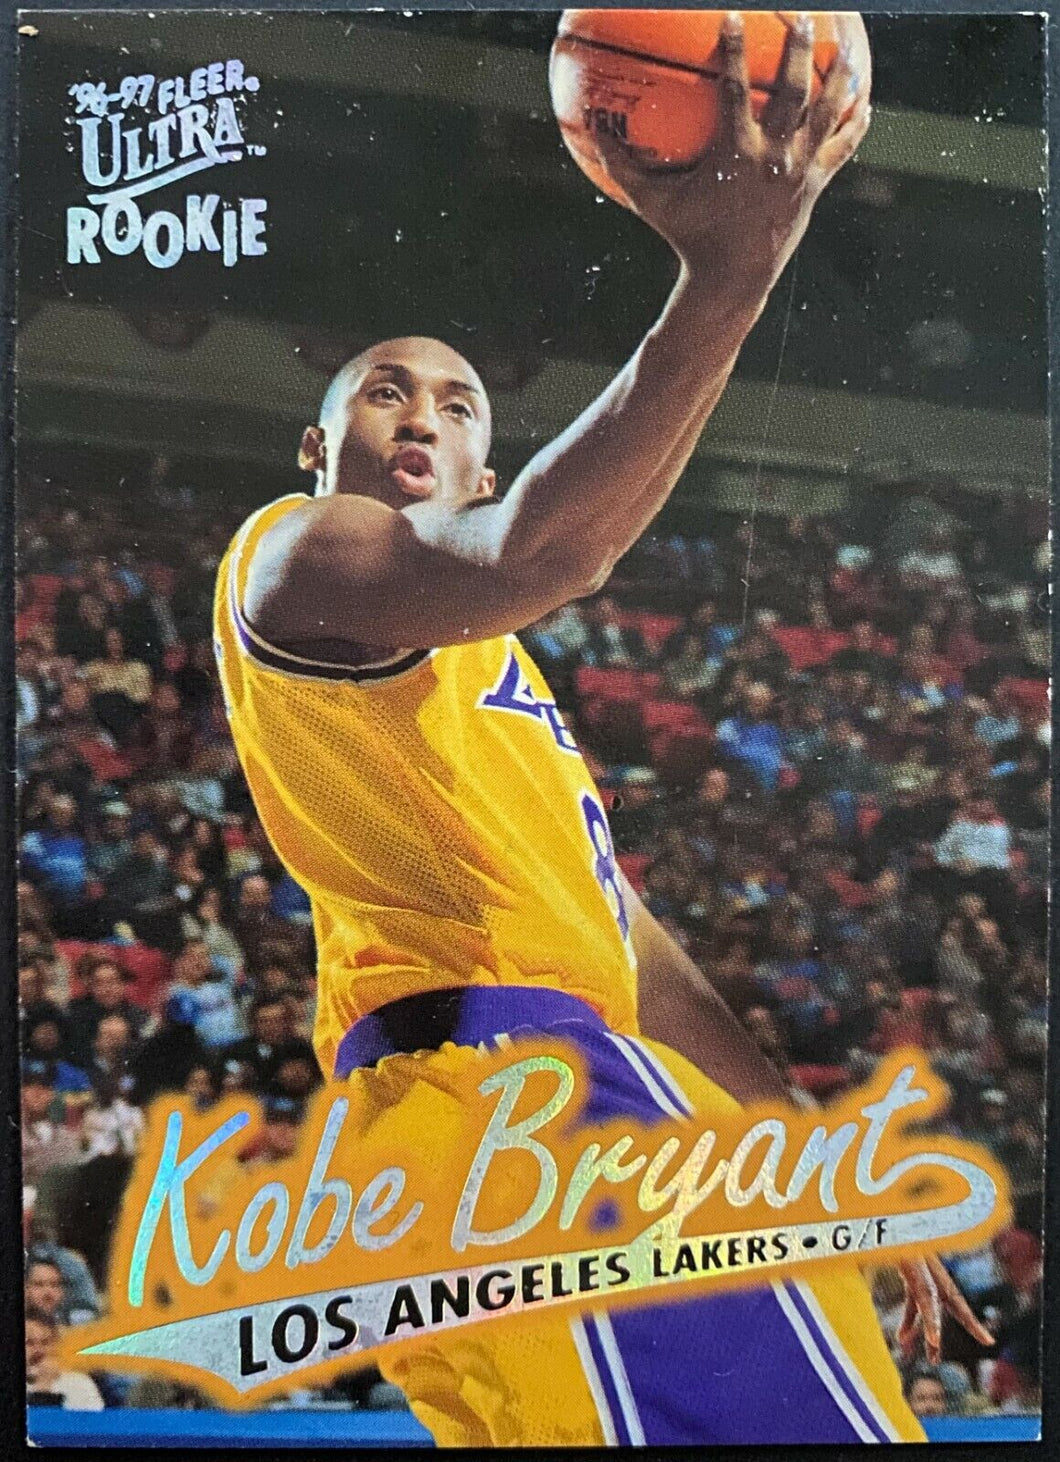 1996 Kobe Bryant Rookie Basketball Card Los Angeles Lakers HOF NBA Vintage